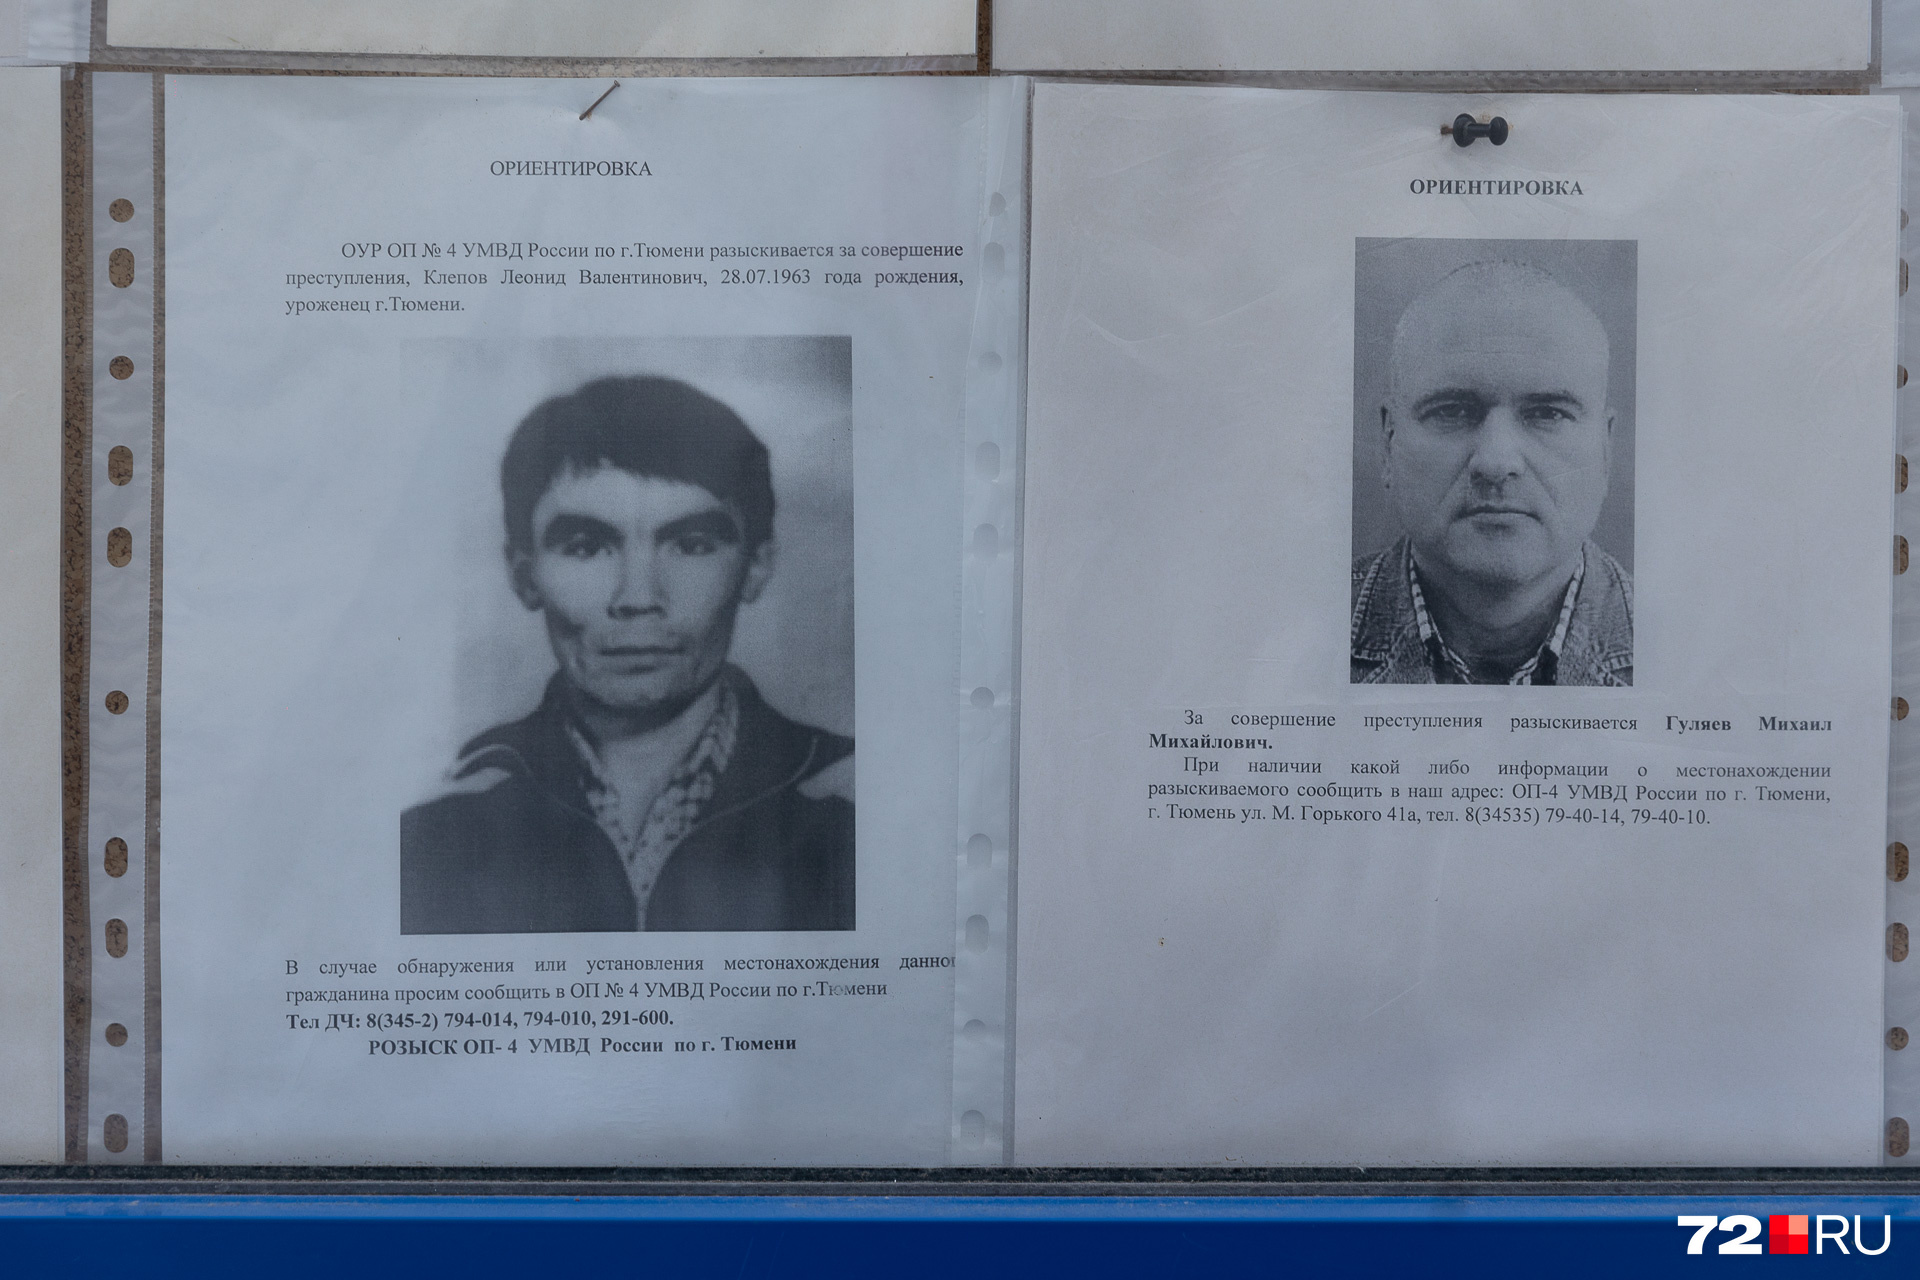 А еще на досках можно увидеть лица Леонида Валентиновича Клепова и Михаила Михайловича Гуляева